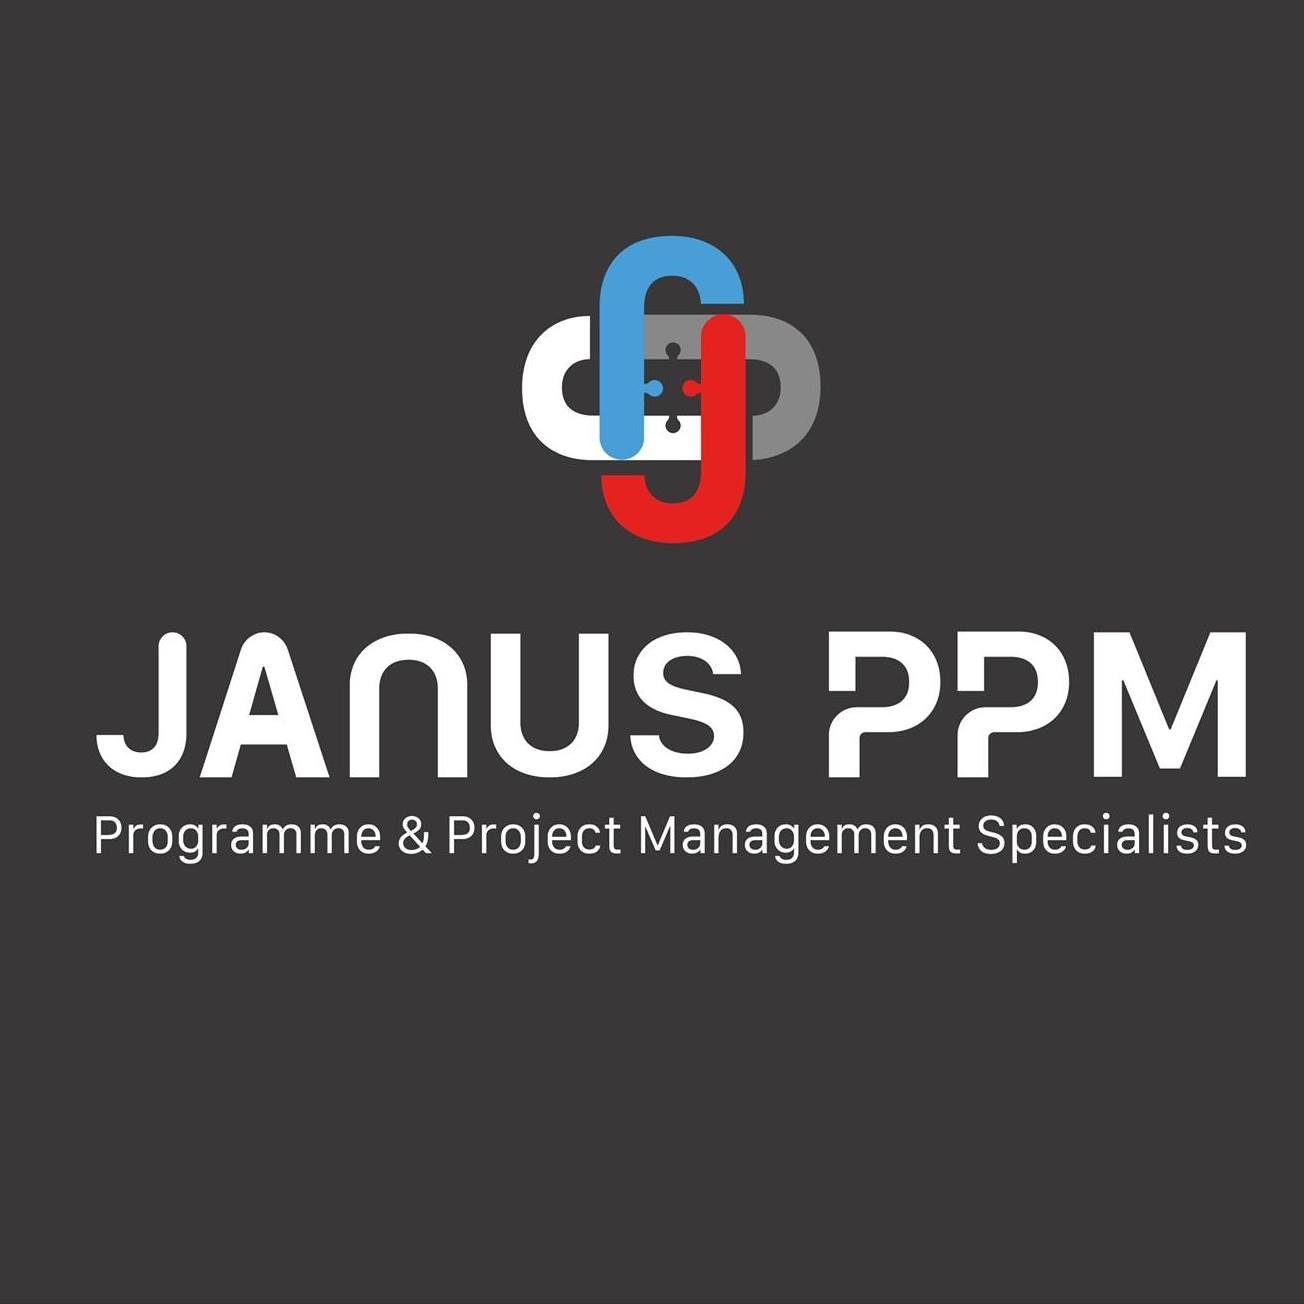 Janus Programme & Project Management